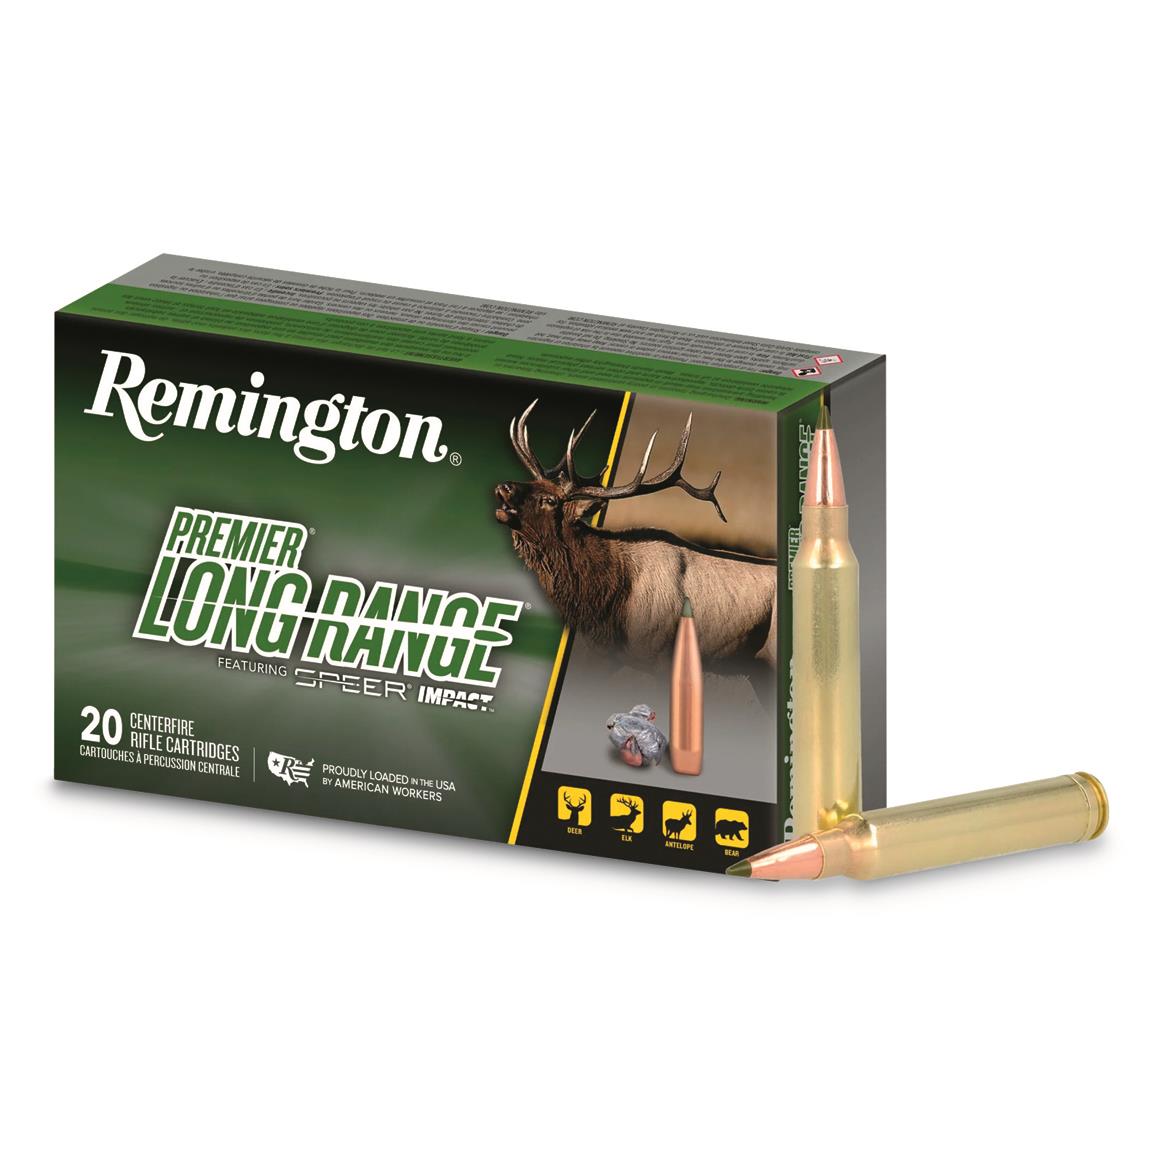 Remington Premier Long Range, 300 PRC, Speer Impact, 215 Grain, 20 Rounds